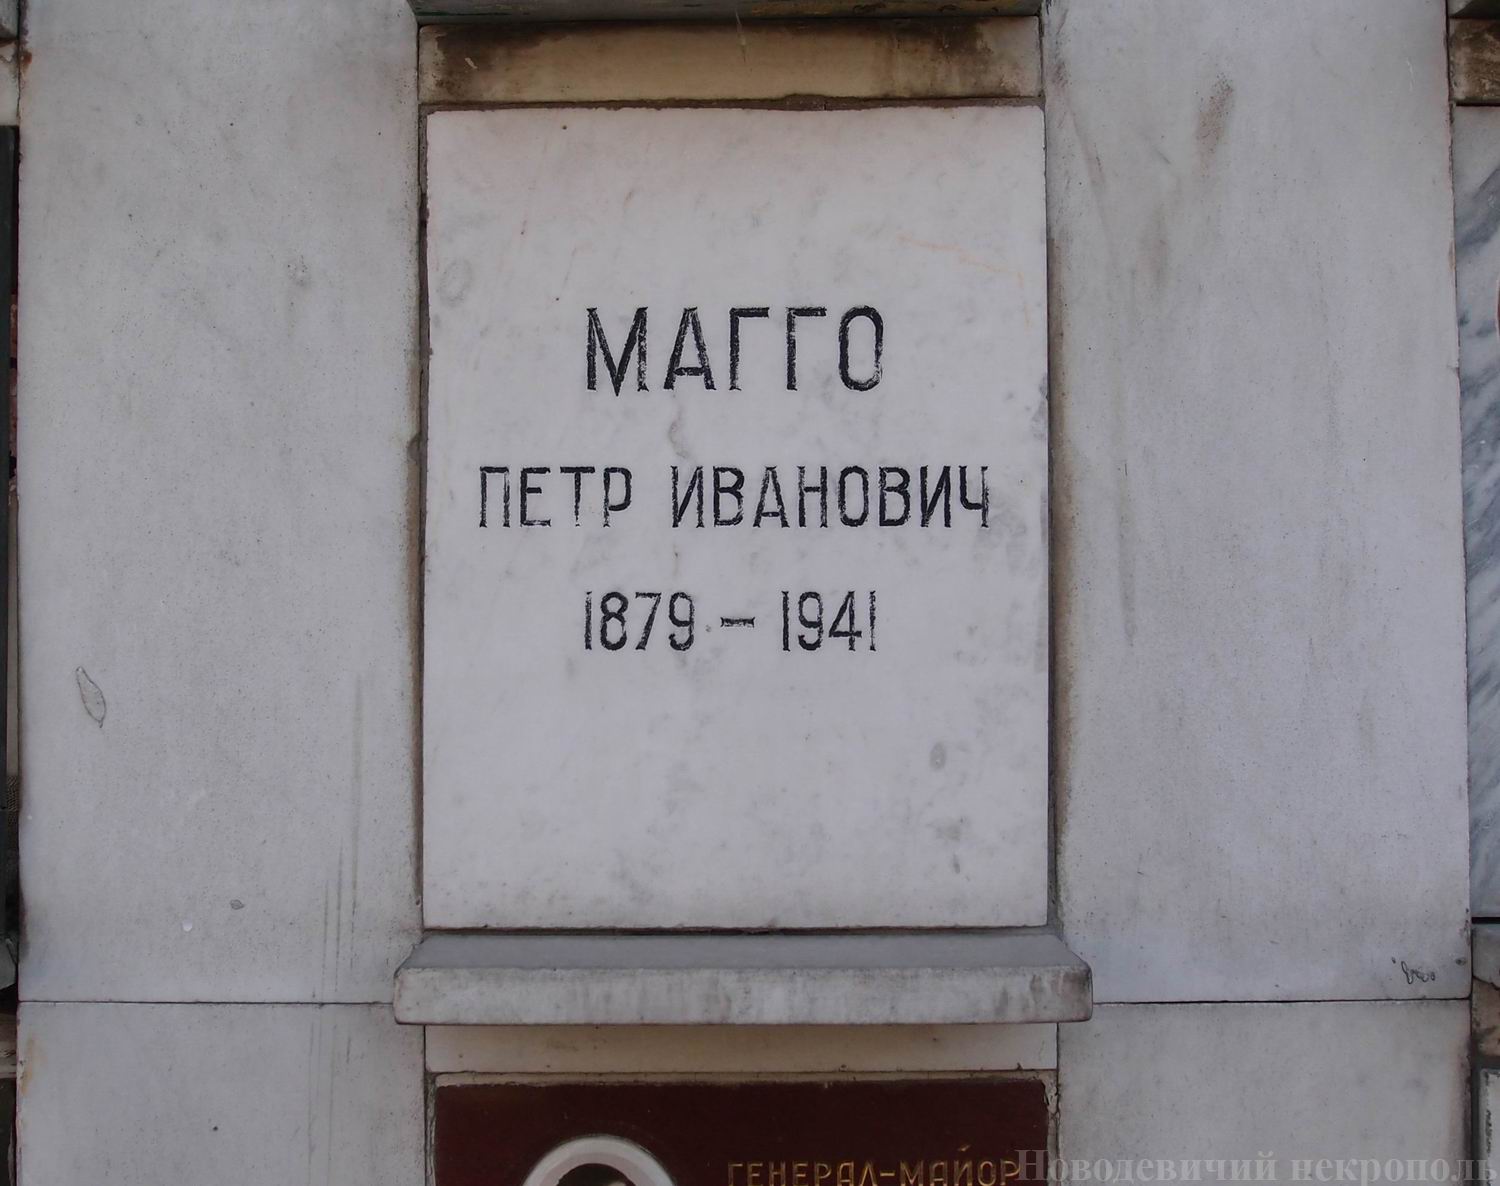 Плита на нише Магго П.И. (1879–1941), на Новодевичьем кладбище (колумбарий [62]–2–3).